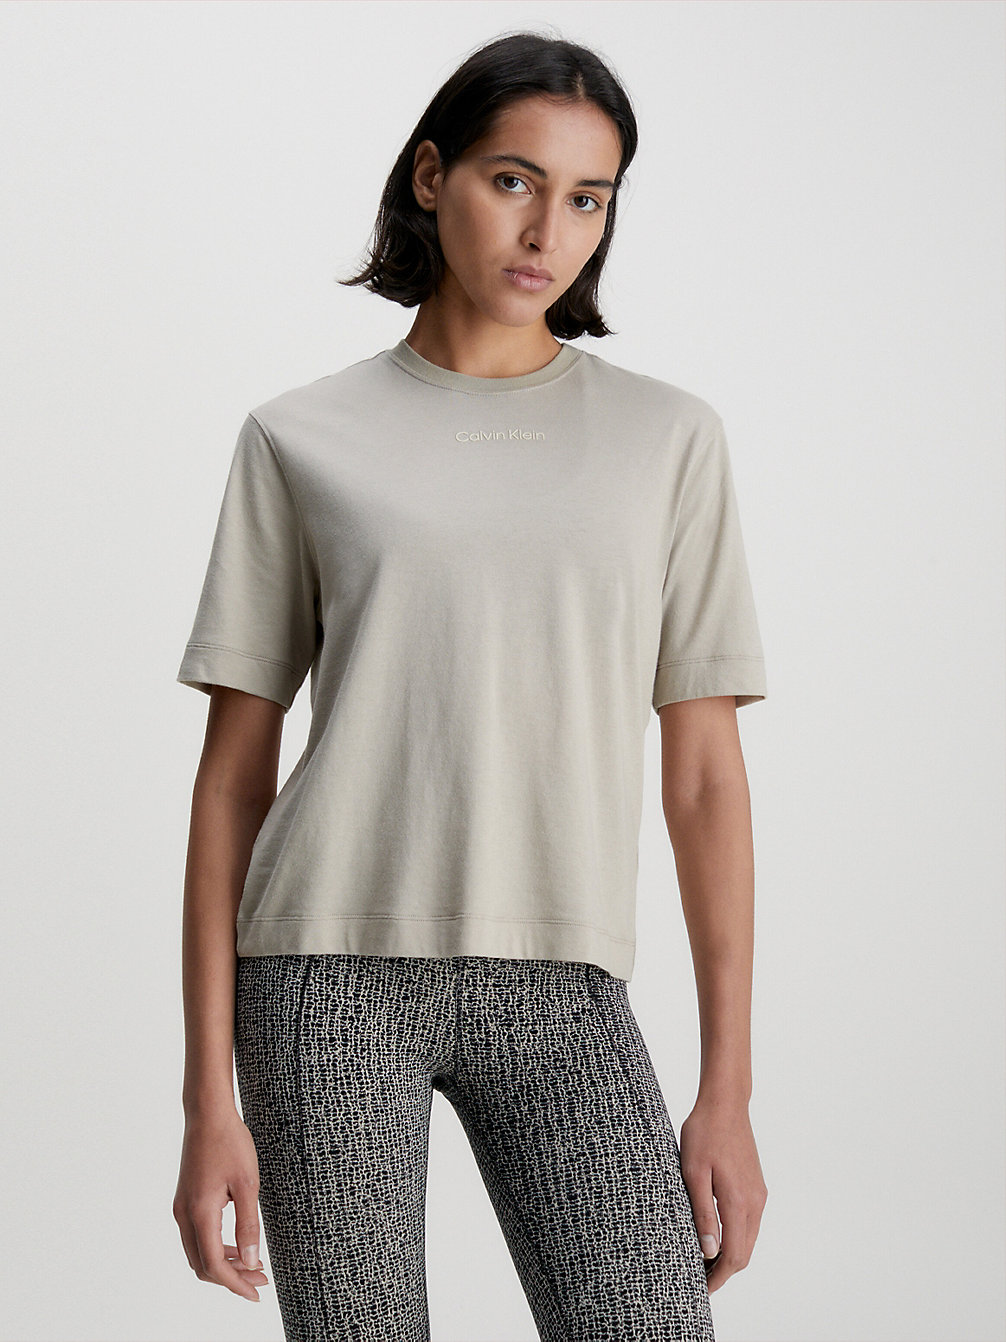 WINTER LINEN > Sport T-Shirt > undefined dames - Calvin Klein